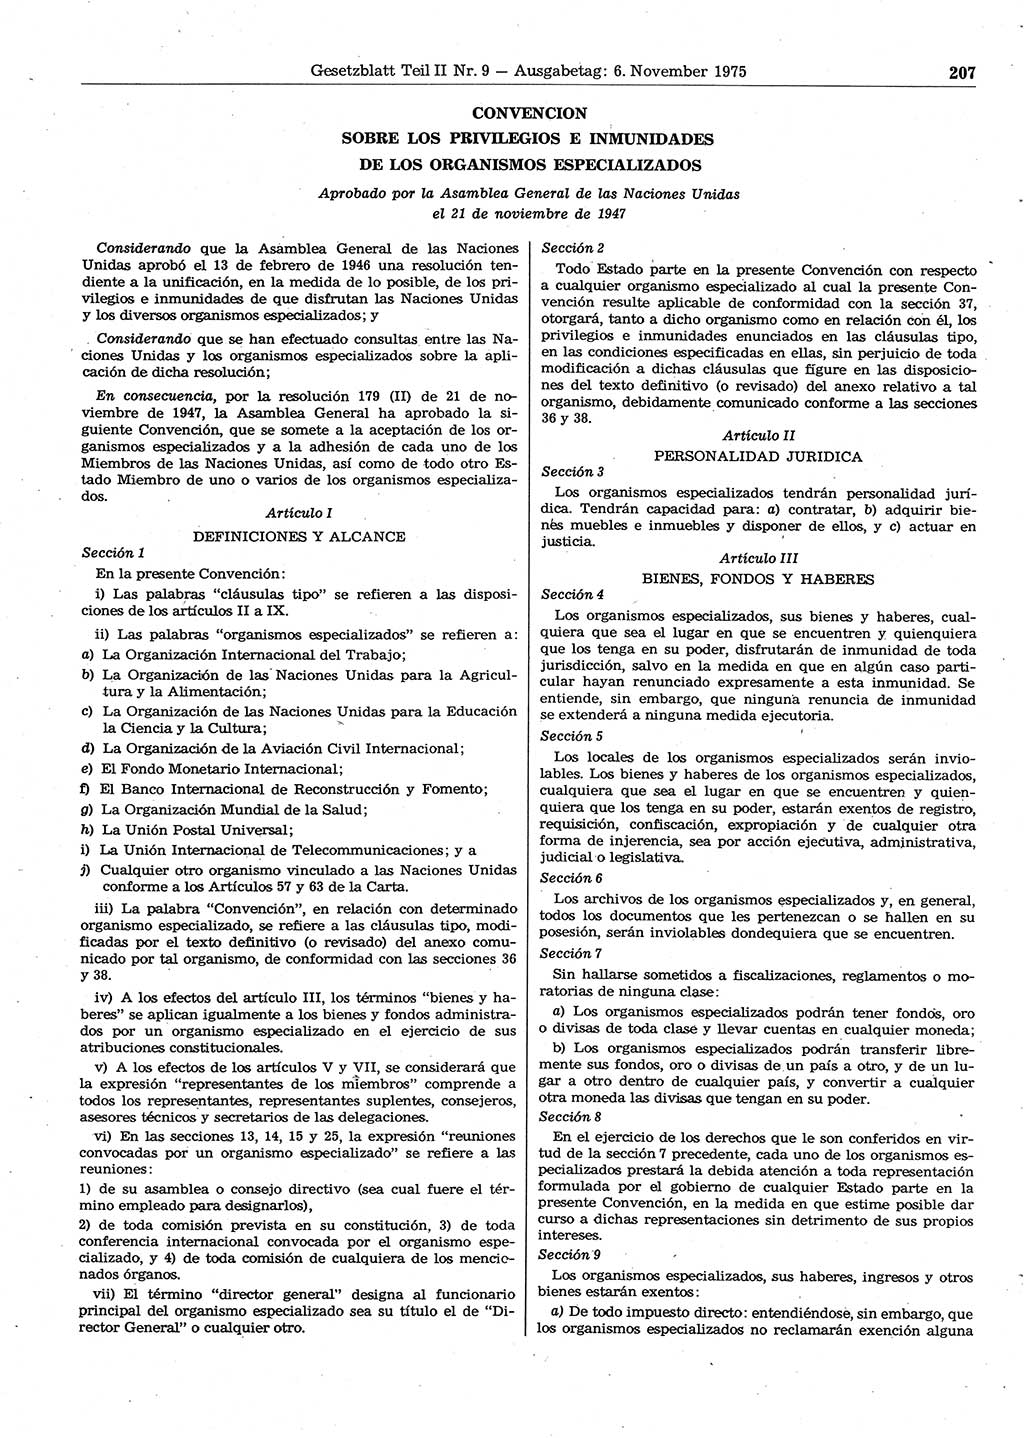 Gesetzblatt (GBl.) der Deutschen Demokratischen Republik (DDR) Teil ⅠⅠ 1975, Seite 207 (GBl. DDR ⅠⅠ 1975, S. 207)